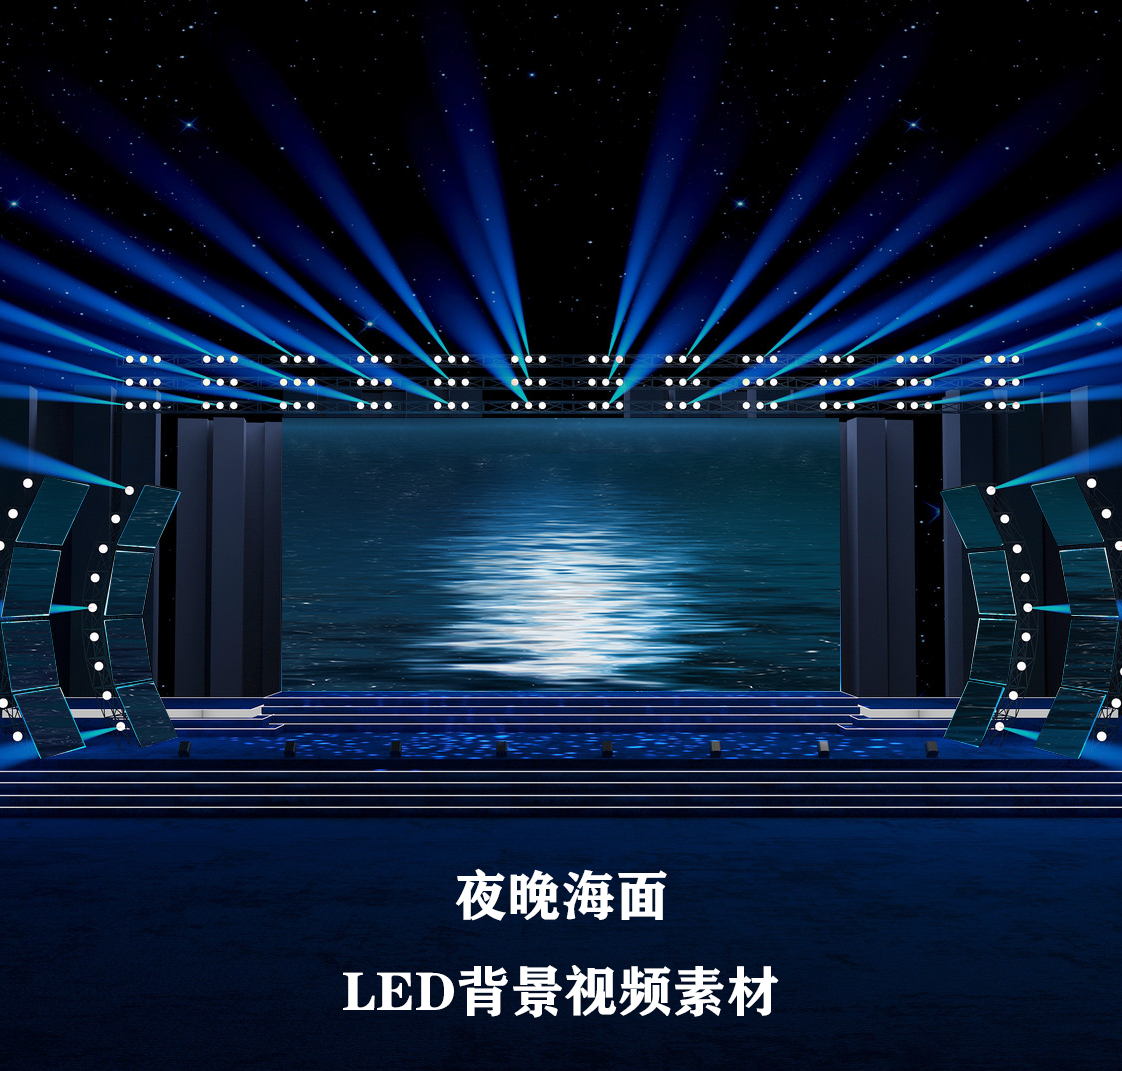 S4391 夜晚海面 演出LED 节目大屏舞美背景视频素材